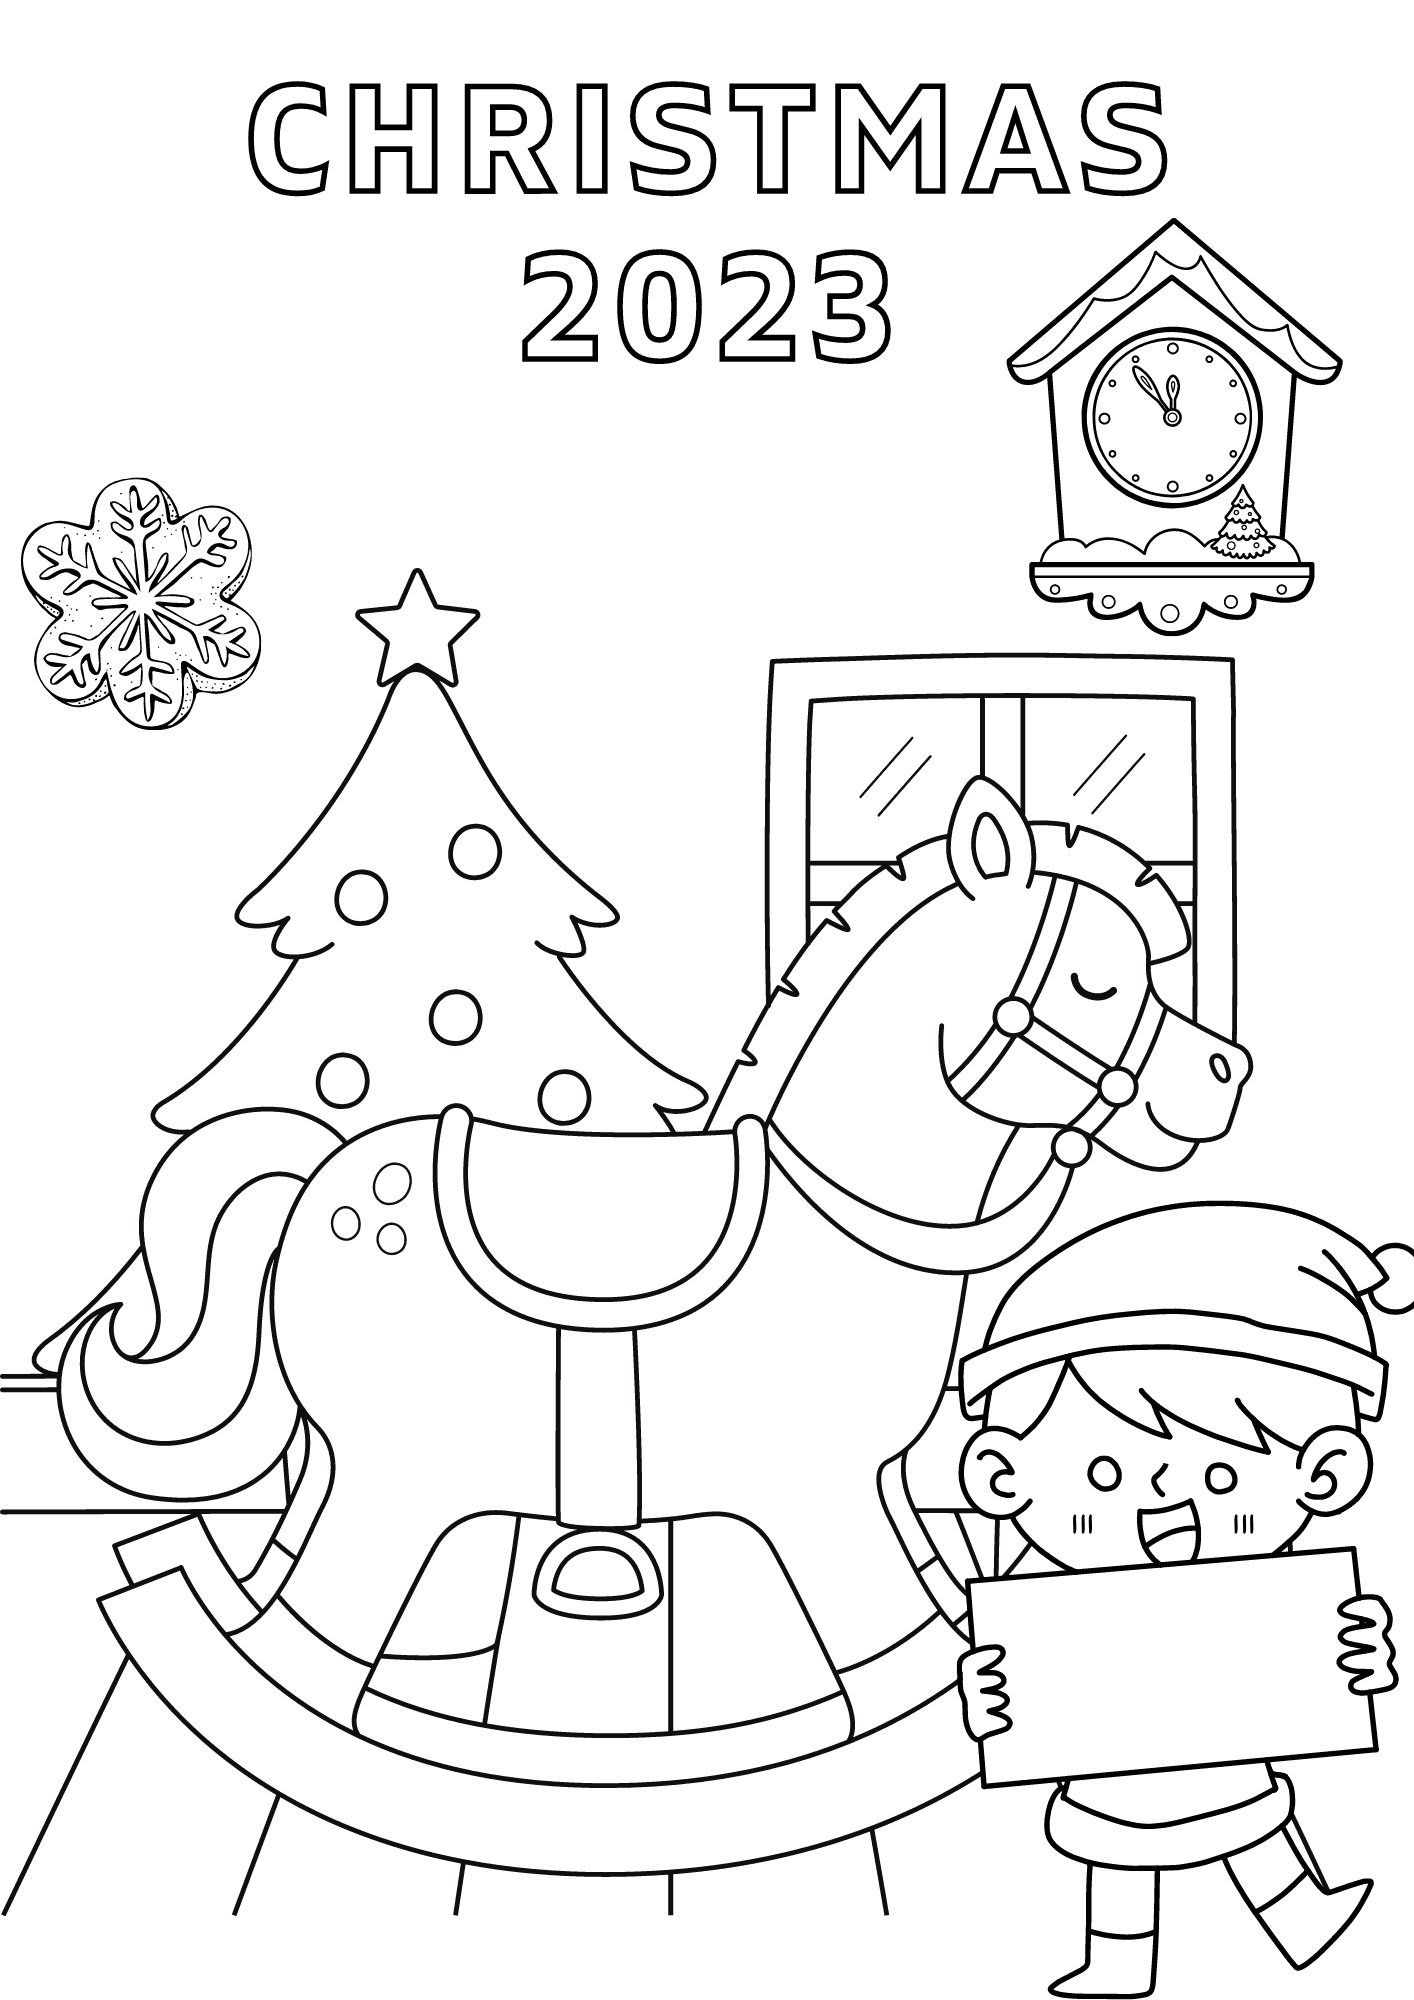 Christmas 2023 Image For Children